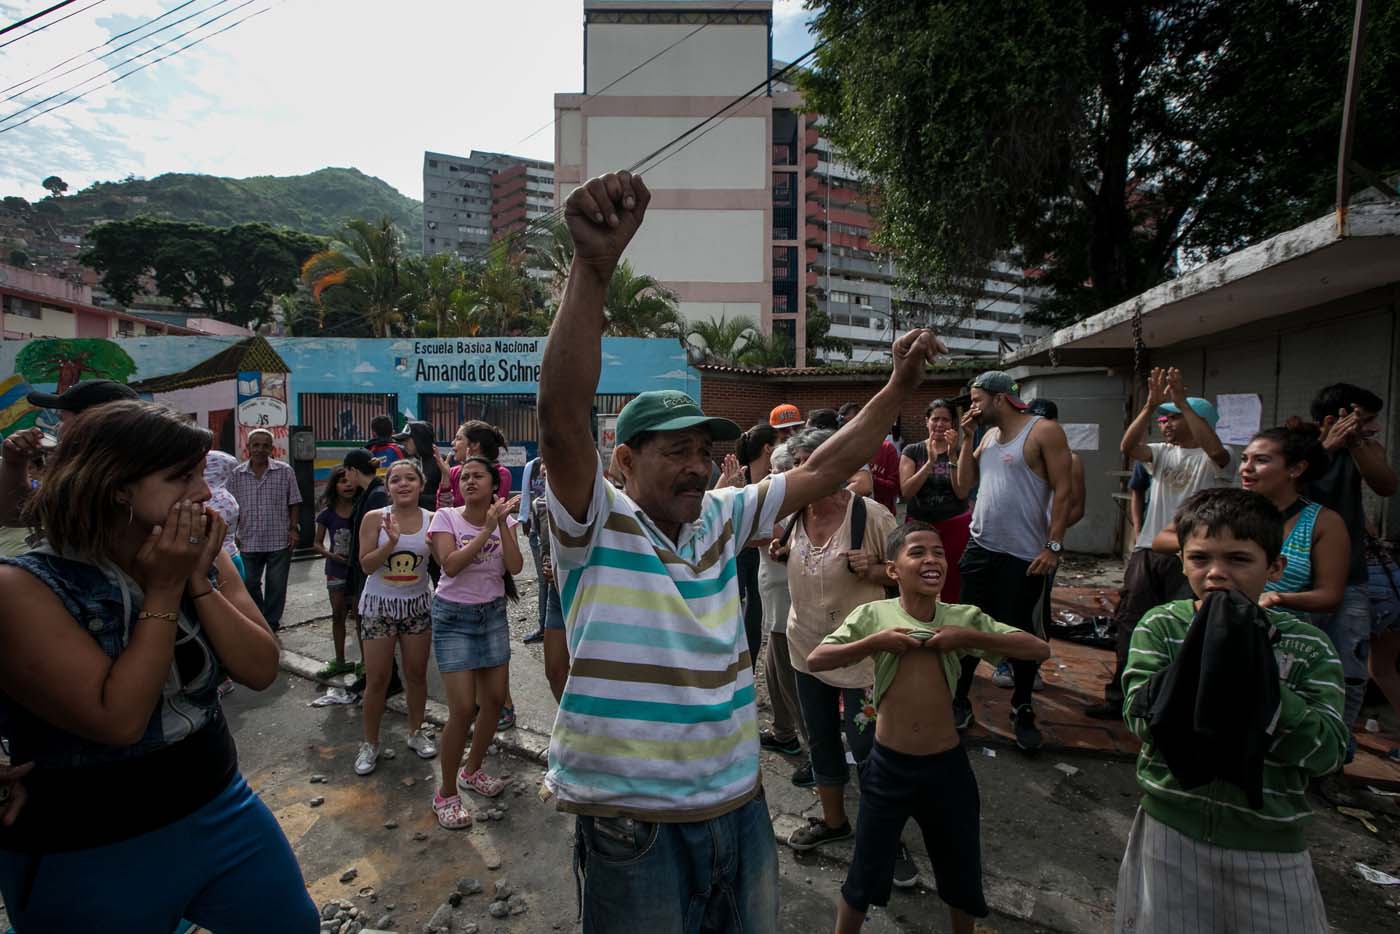 CAR10 - CARACAS (VENEZUELA), 02/06/2017 - Un grupo de personas participa en una manifestación hoy, viernes 02 de junio de 2017, en Caracas (Venezuela). Los habitantes del populoso barrio de La Vega, ubicado en el oeste de Caracas, madrugaron hoy para protestar por la escasez de alimentos, mientras que las calles aledañas al canal estatal VTV en el este de la ciudad fueron cerradas por organismos de seguridad para evitar la llegada de manifestantes. EFE/MIGUEL GUTIÉRREZ